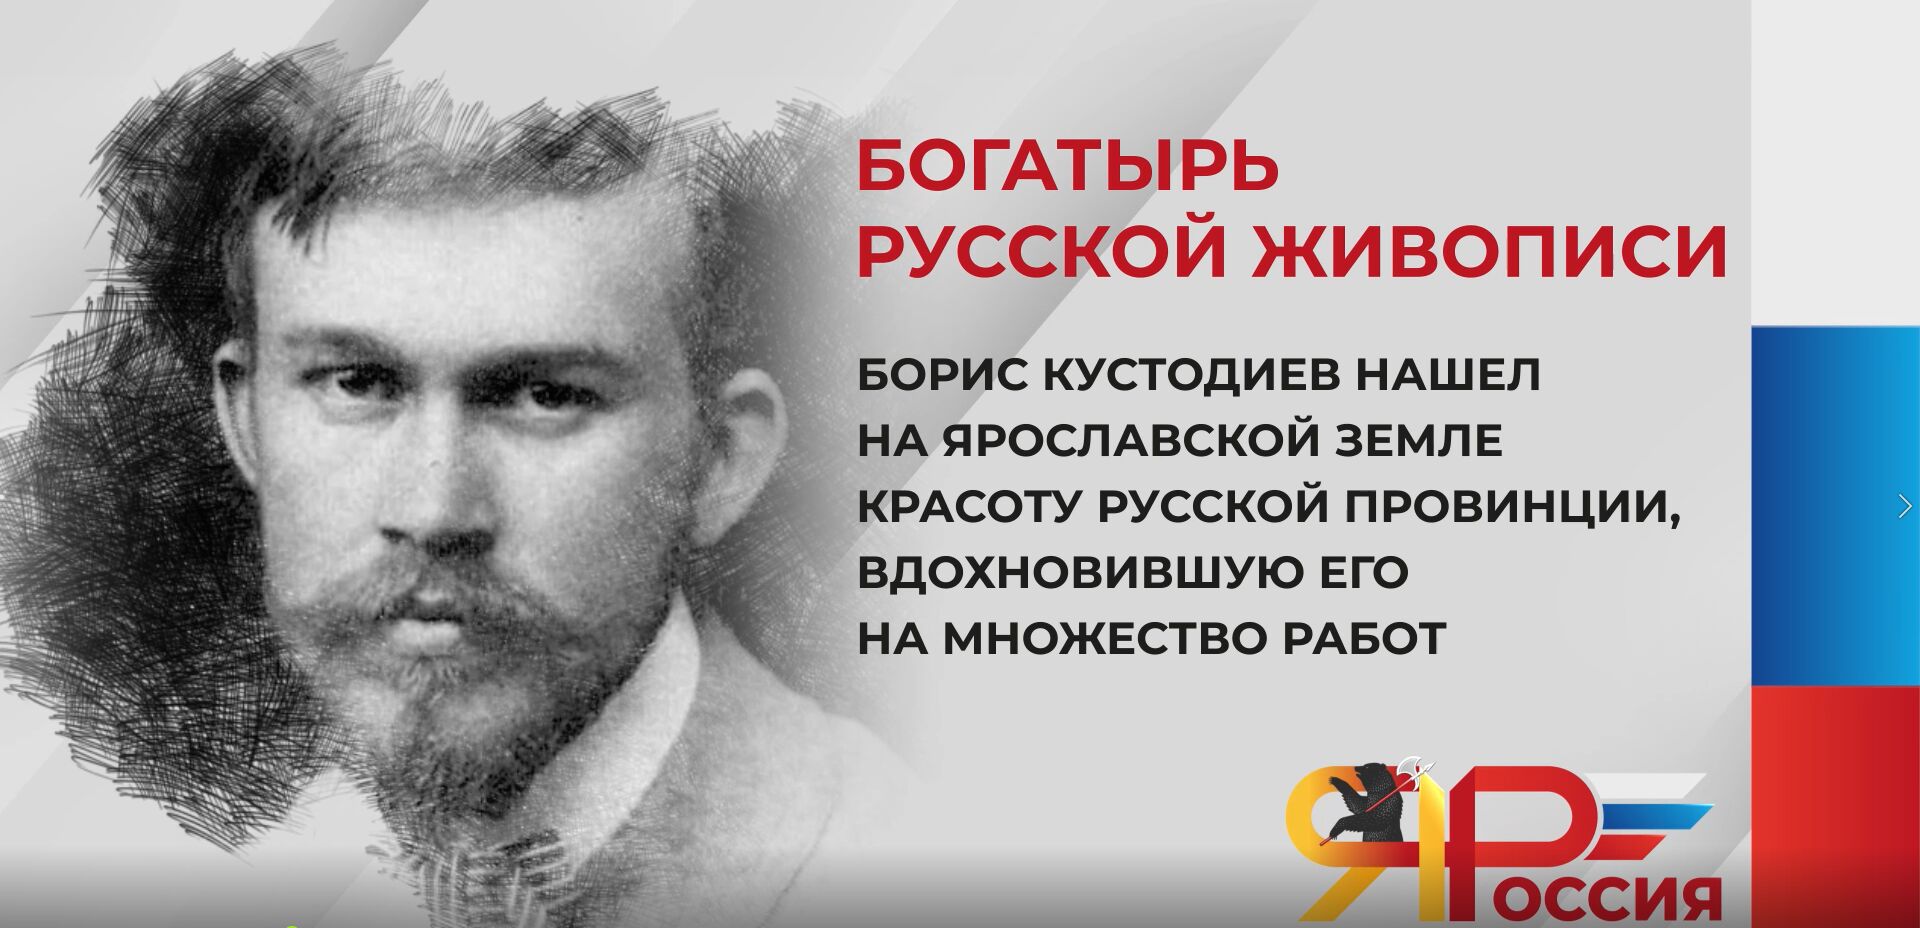 7 марта исполнилось 145 лет со дня рождения Бориса Кустодиева